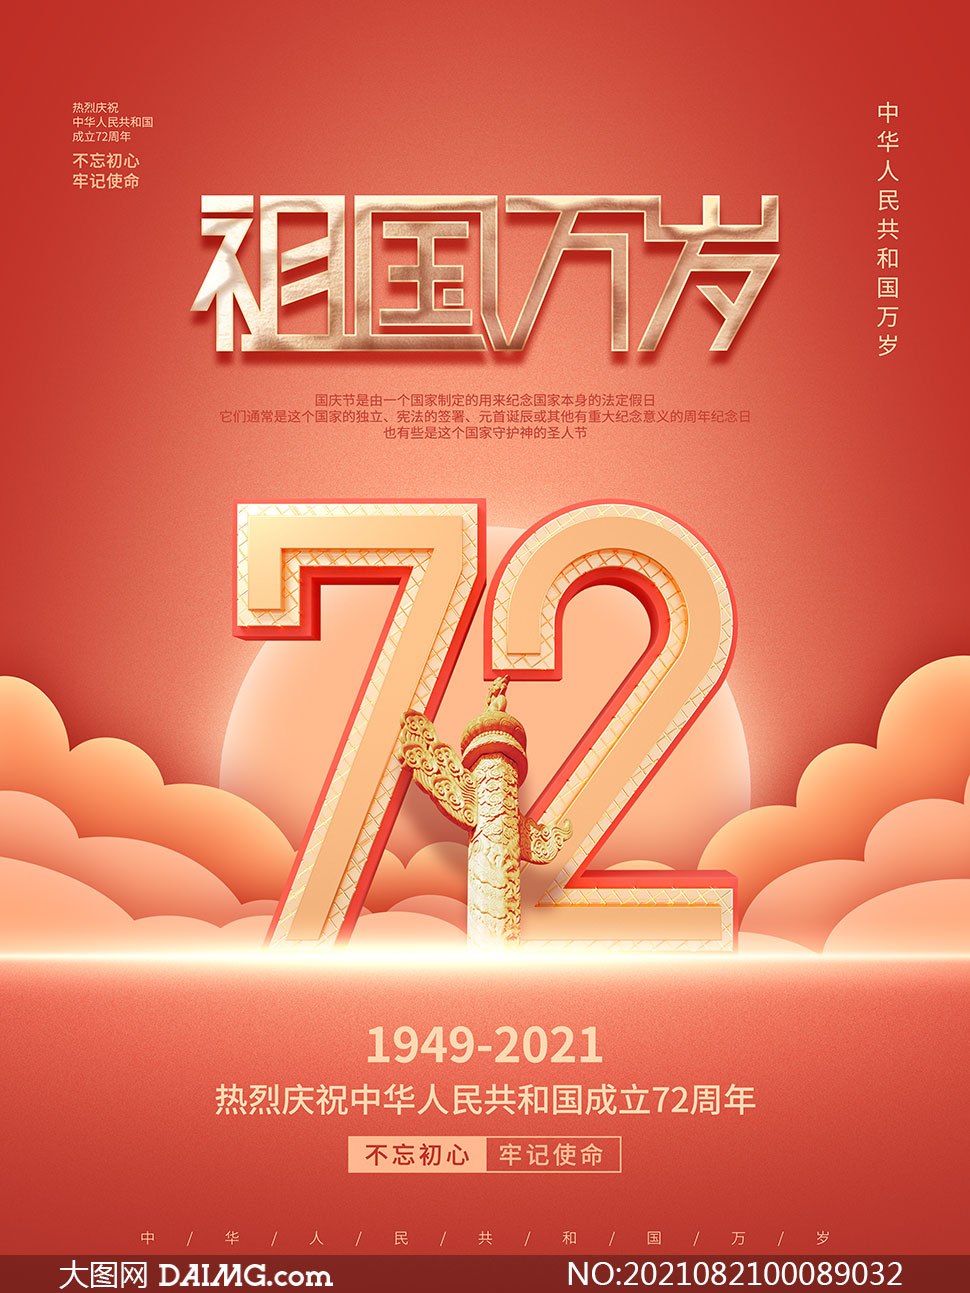 大图首页 psd素材 节日海报 > 素材信息         庆祝国庆72周年宣传